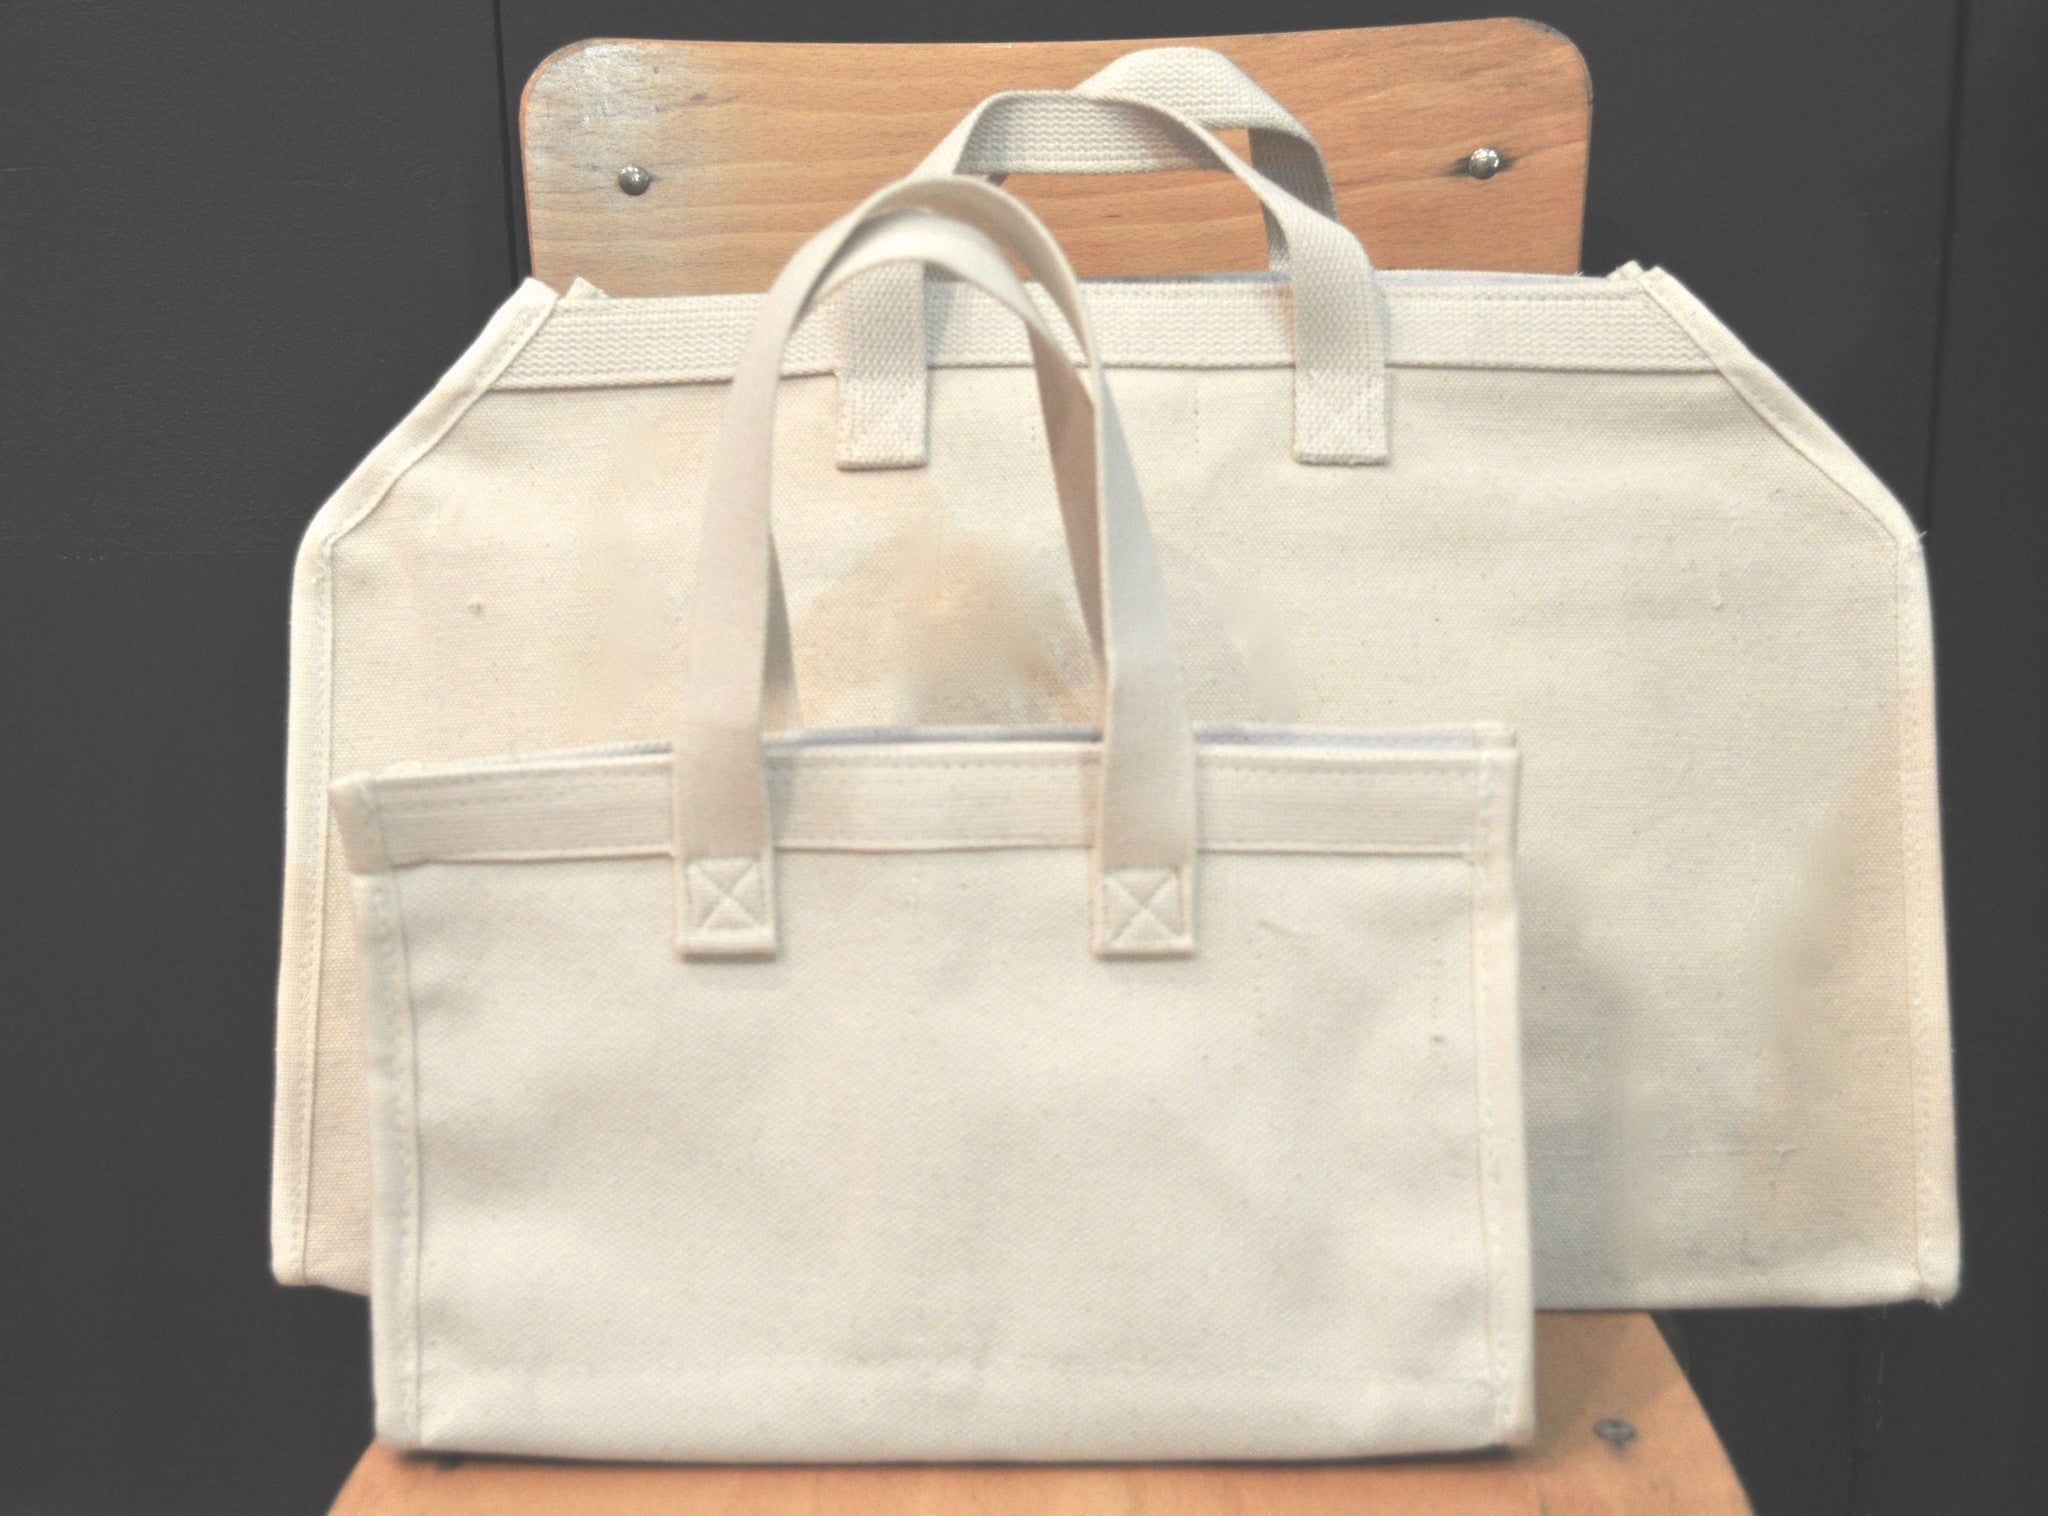 Utilitarian Tote Bag 25L